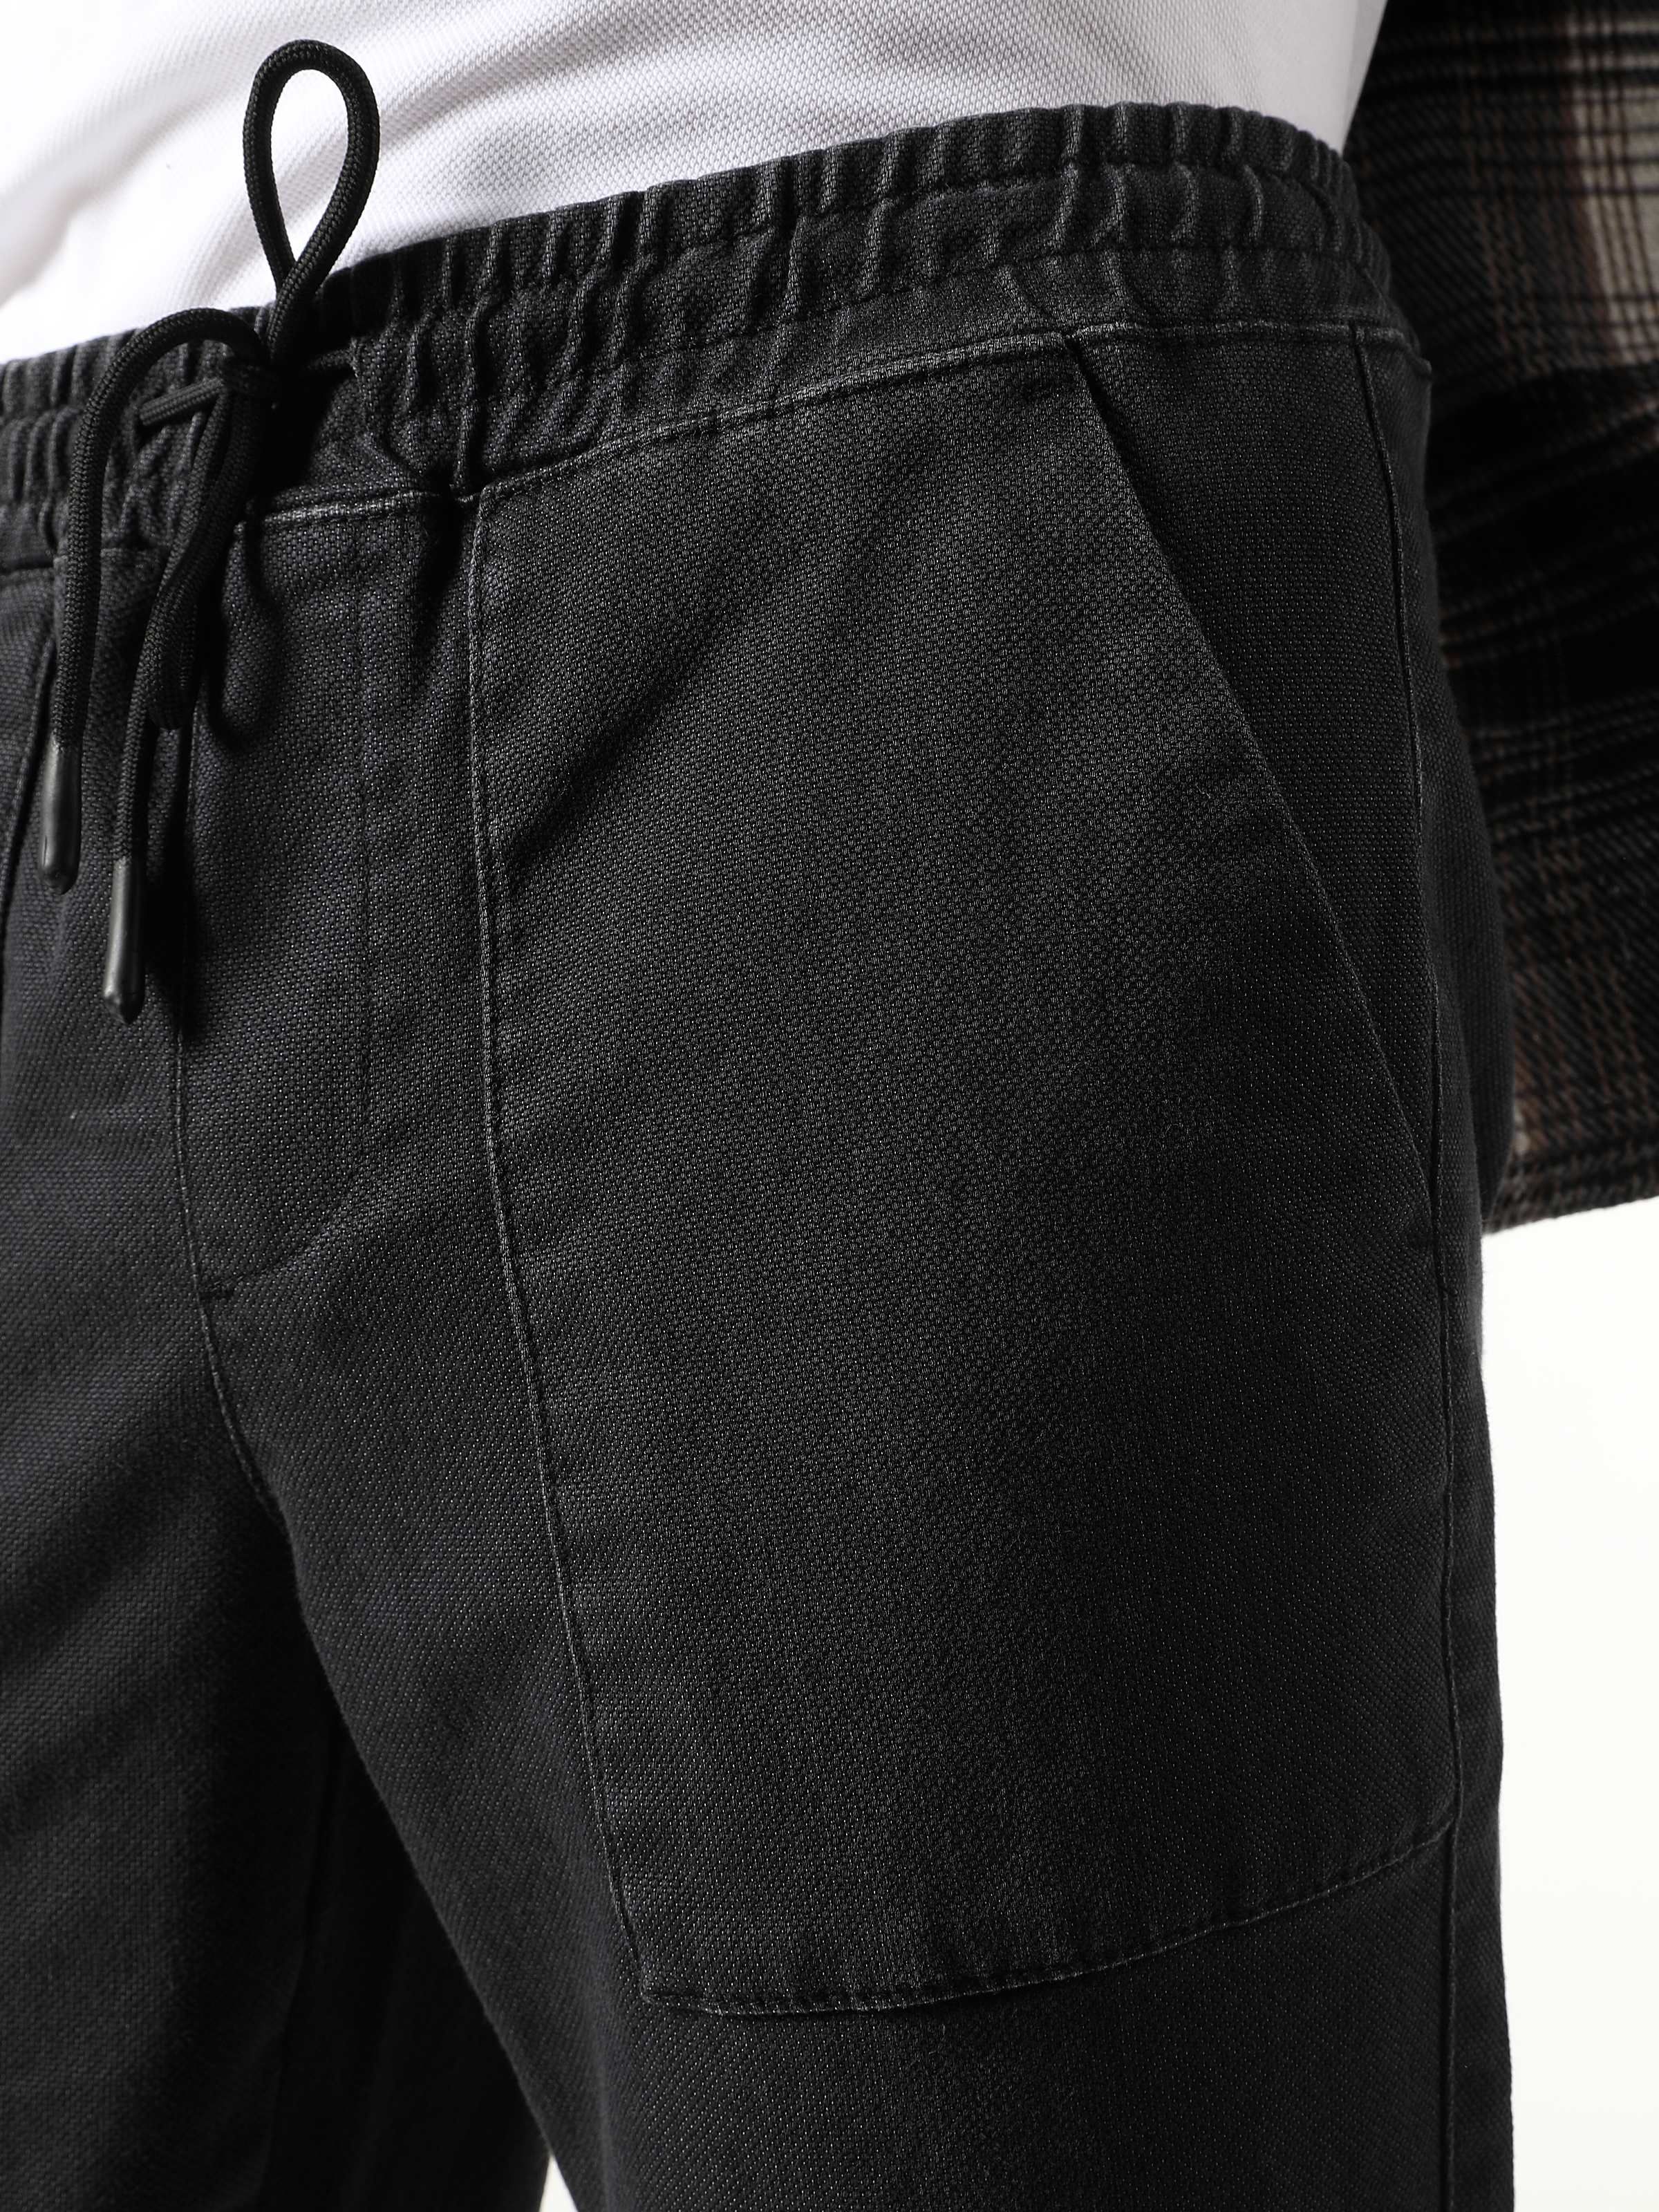 Afficher les détails de Pantalon Homme Taille Moyenne Coupe Slim Coupe Droite Anthracite